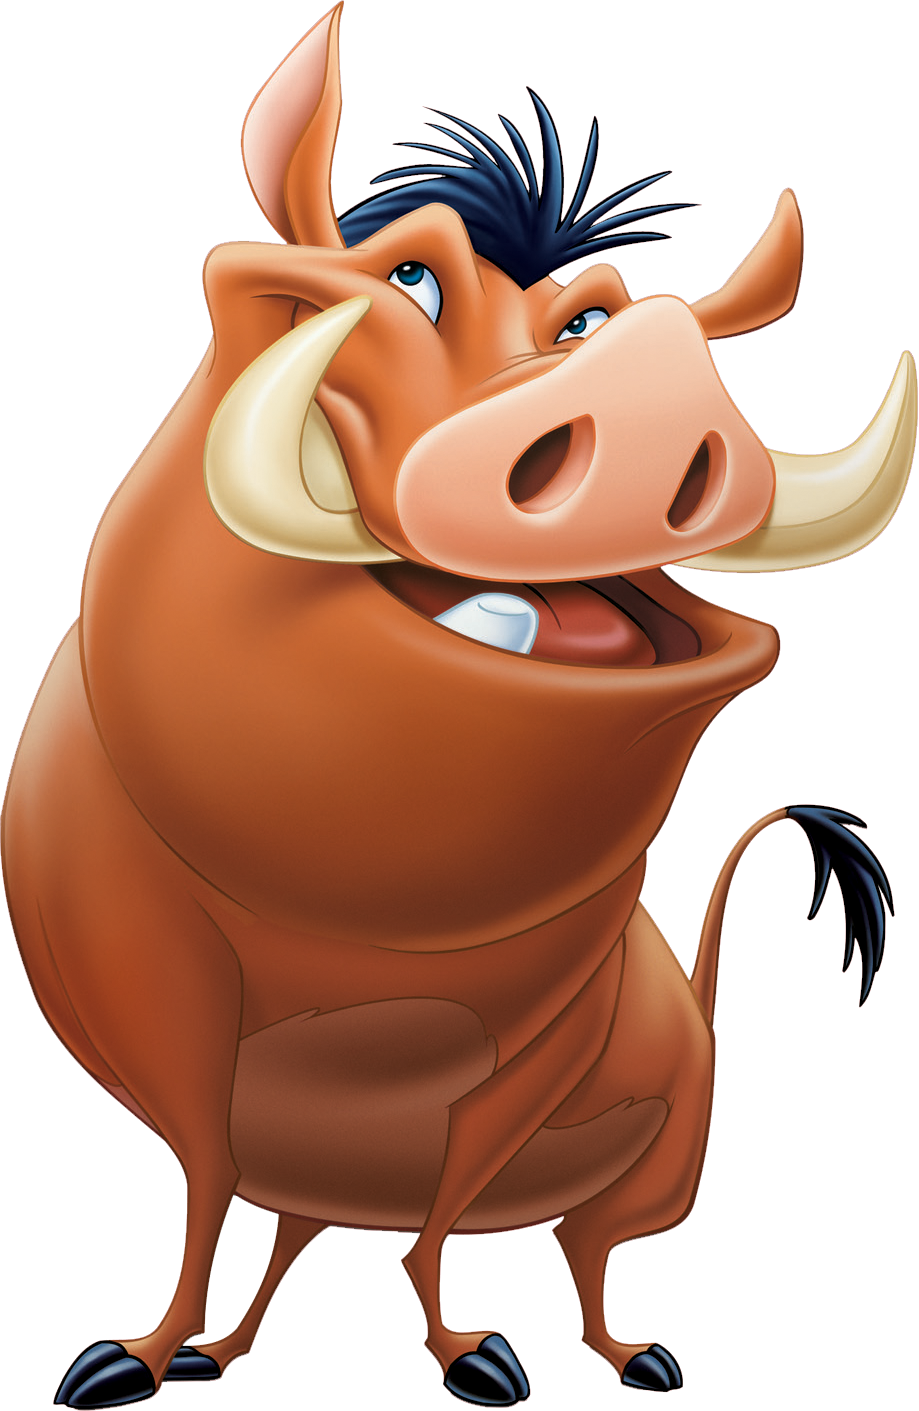 Pumbaa | Disney Wiki | FANDOM powered by Wikia